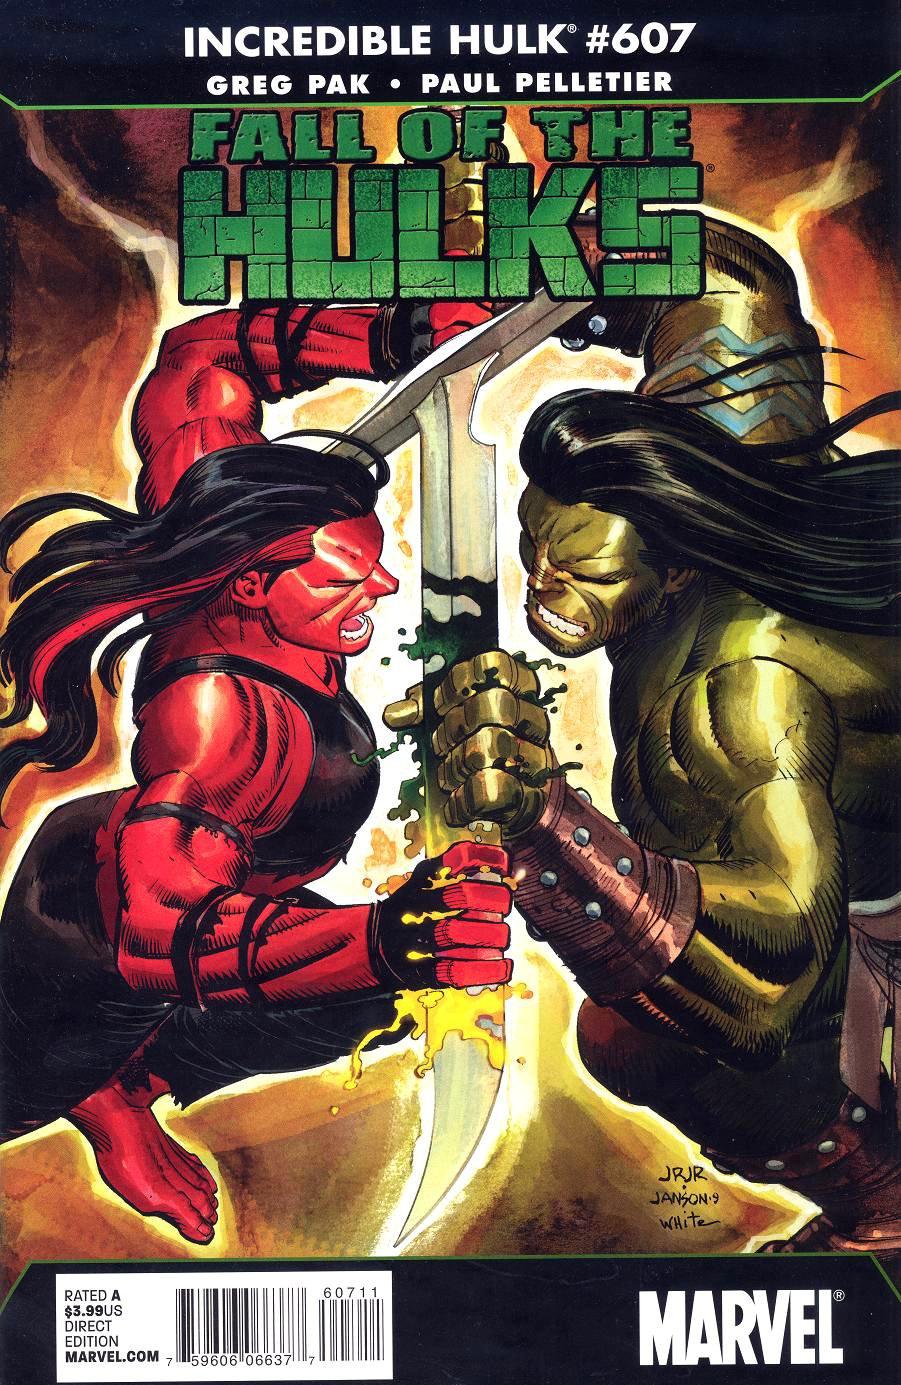 The Incredible Hulk Vol. 1 #607